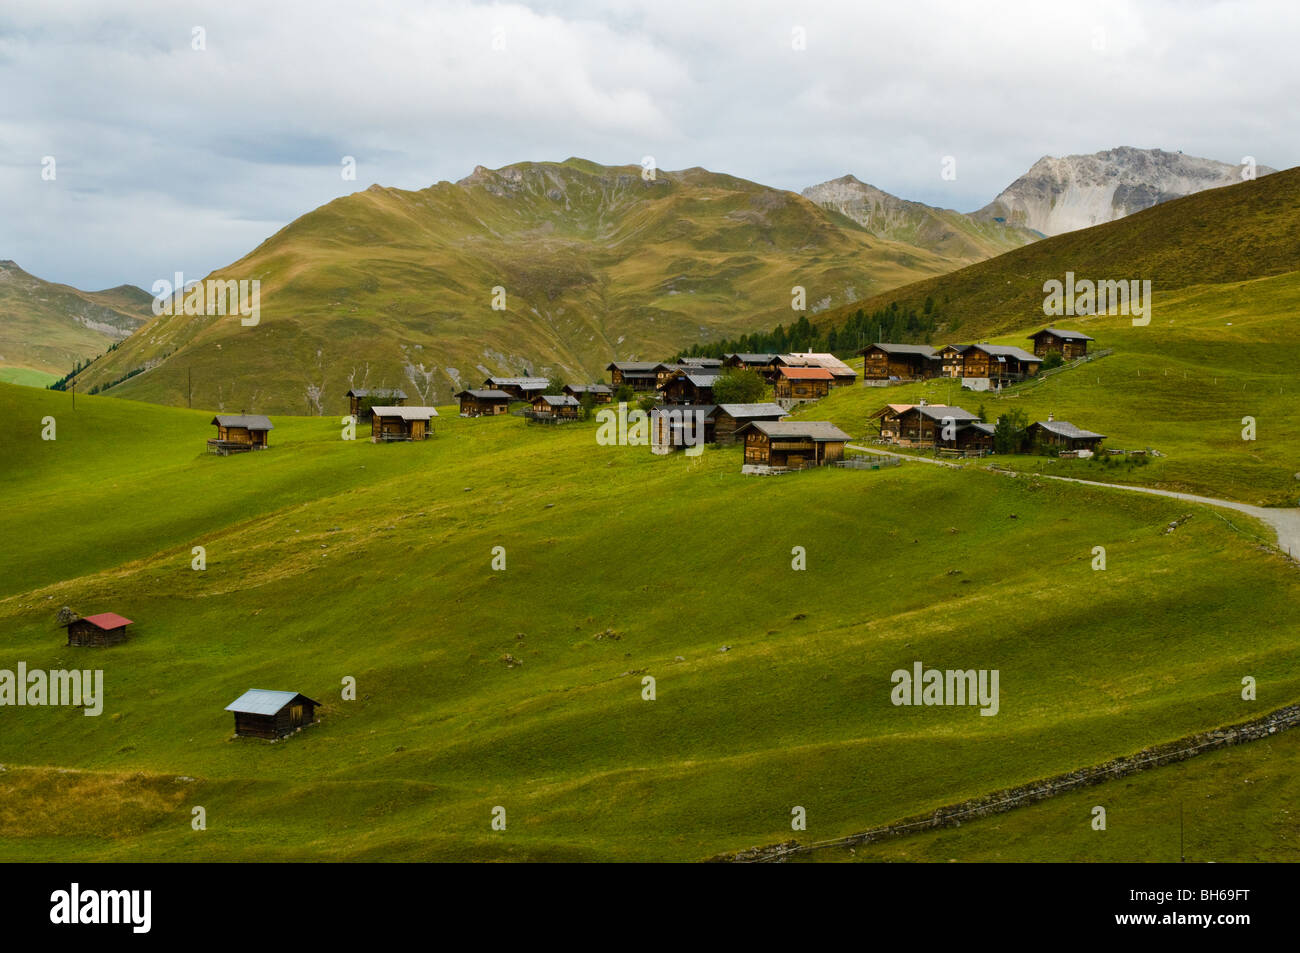 The Alpine village of Medergen above Arosa, Graubünden, Switzerland Stock Photo